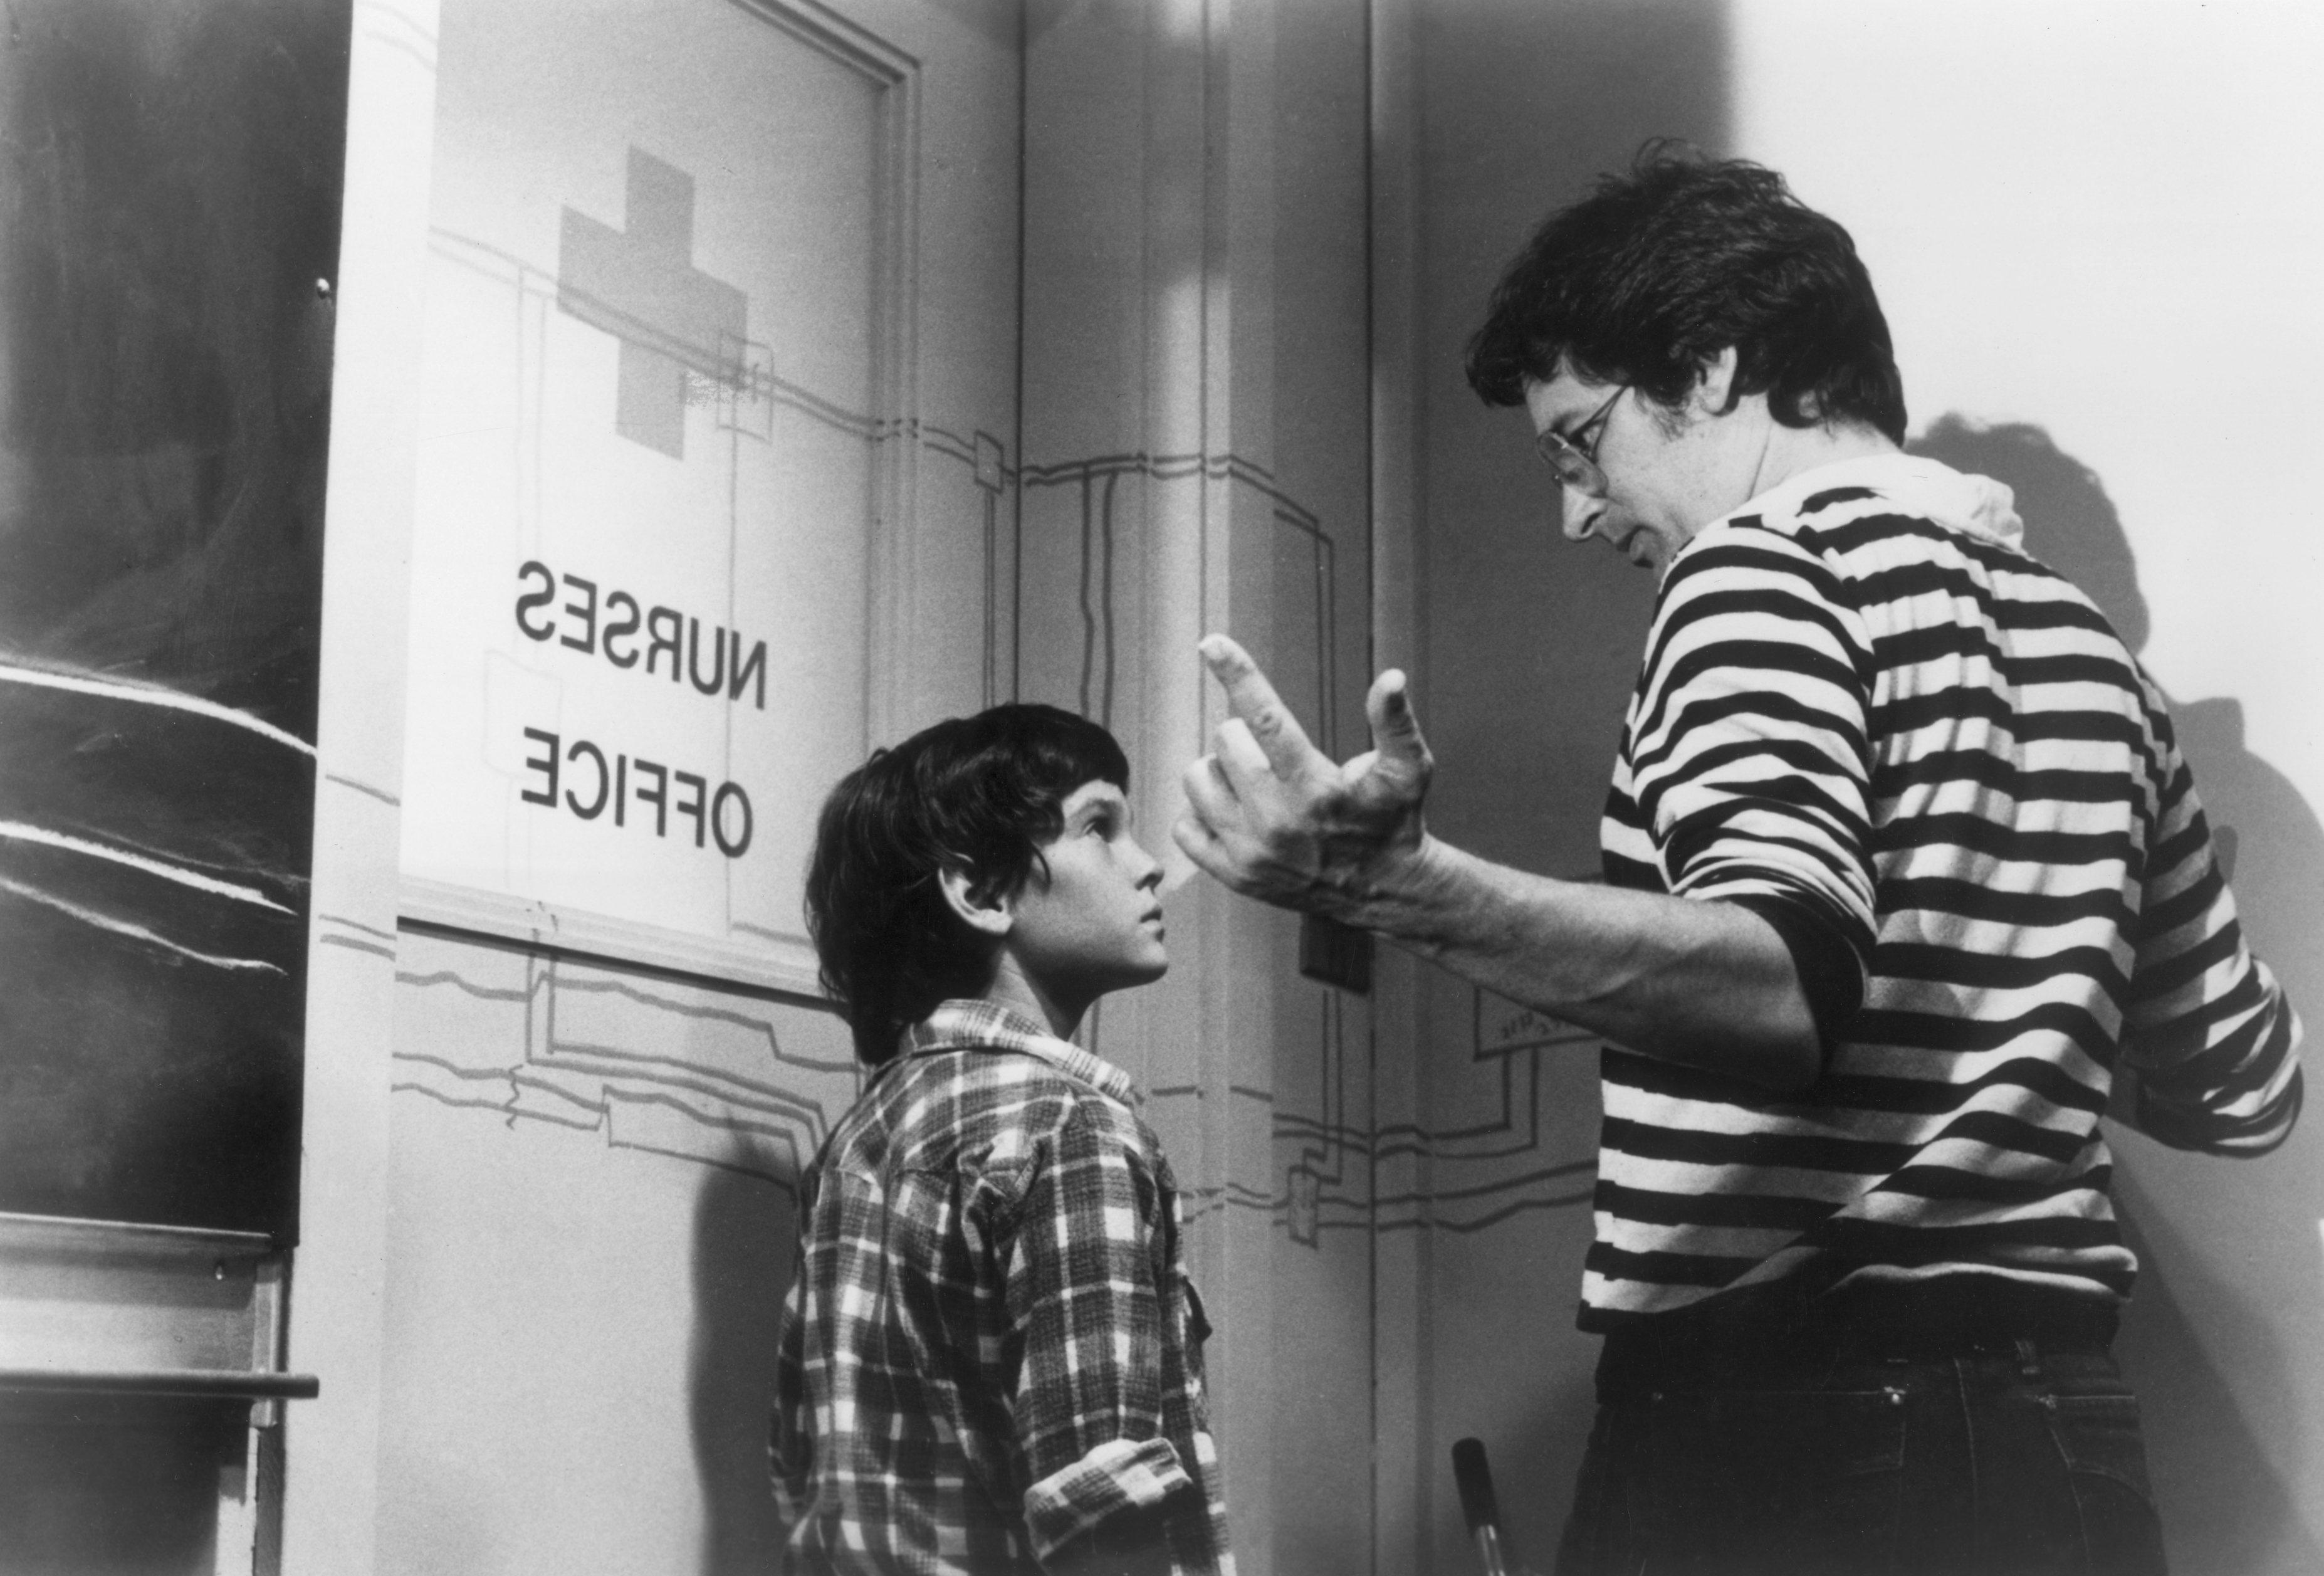 Steven Spielberg le da indicaciones al joven actor Henry Thomas durante el rodaje. El director decidió filmar la película en orden cronológico para ayudar a los niños actores (Photo by Universal Studios/Getty Images)